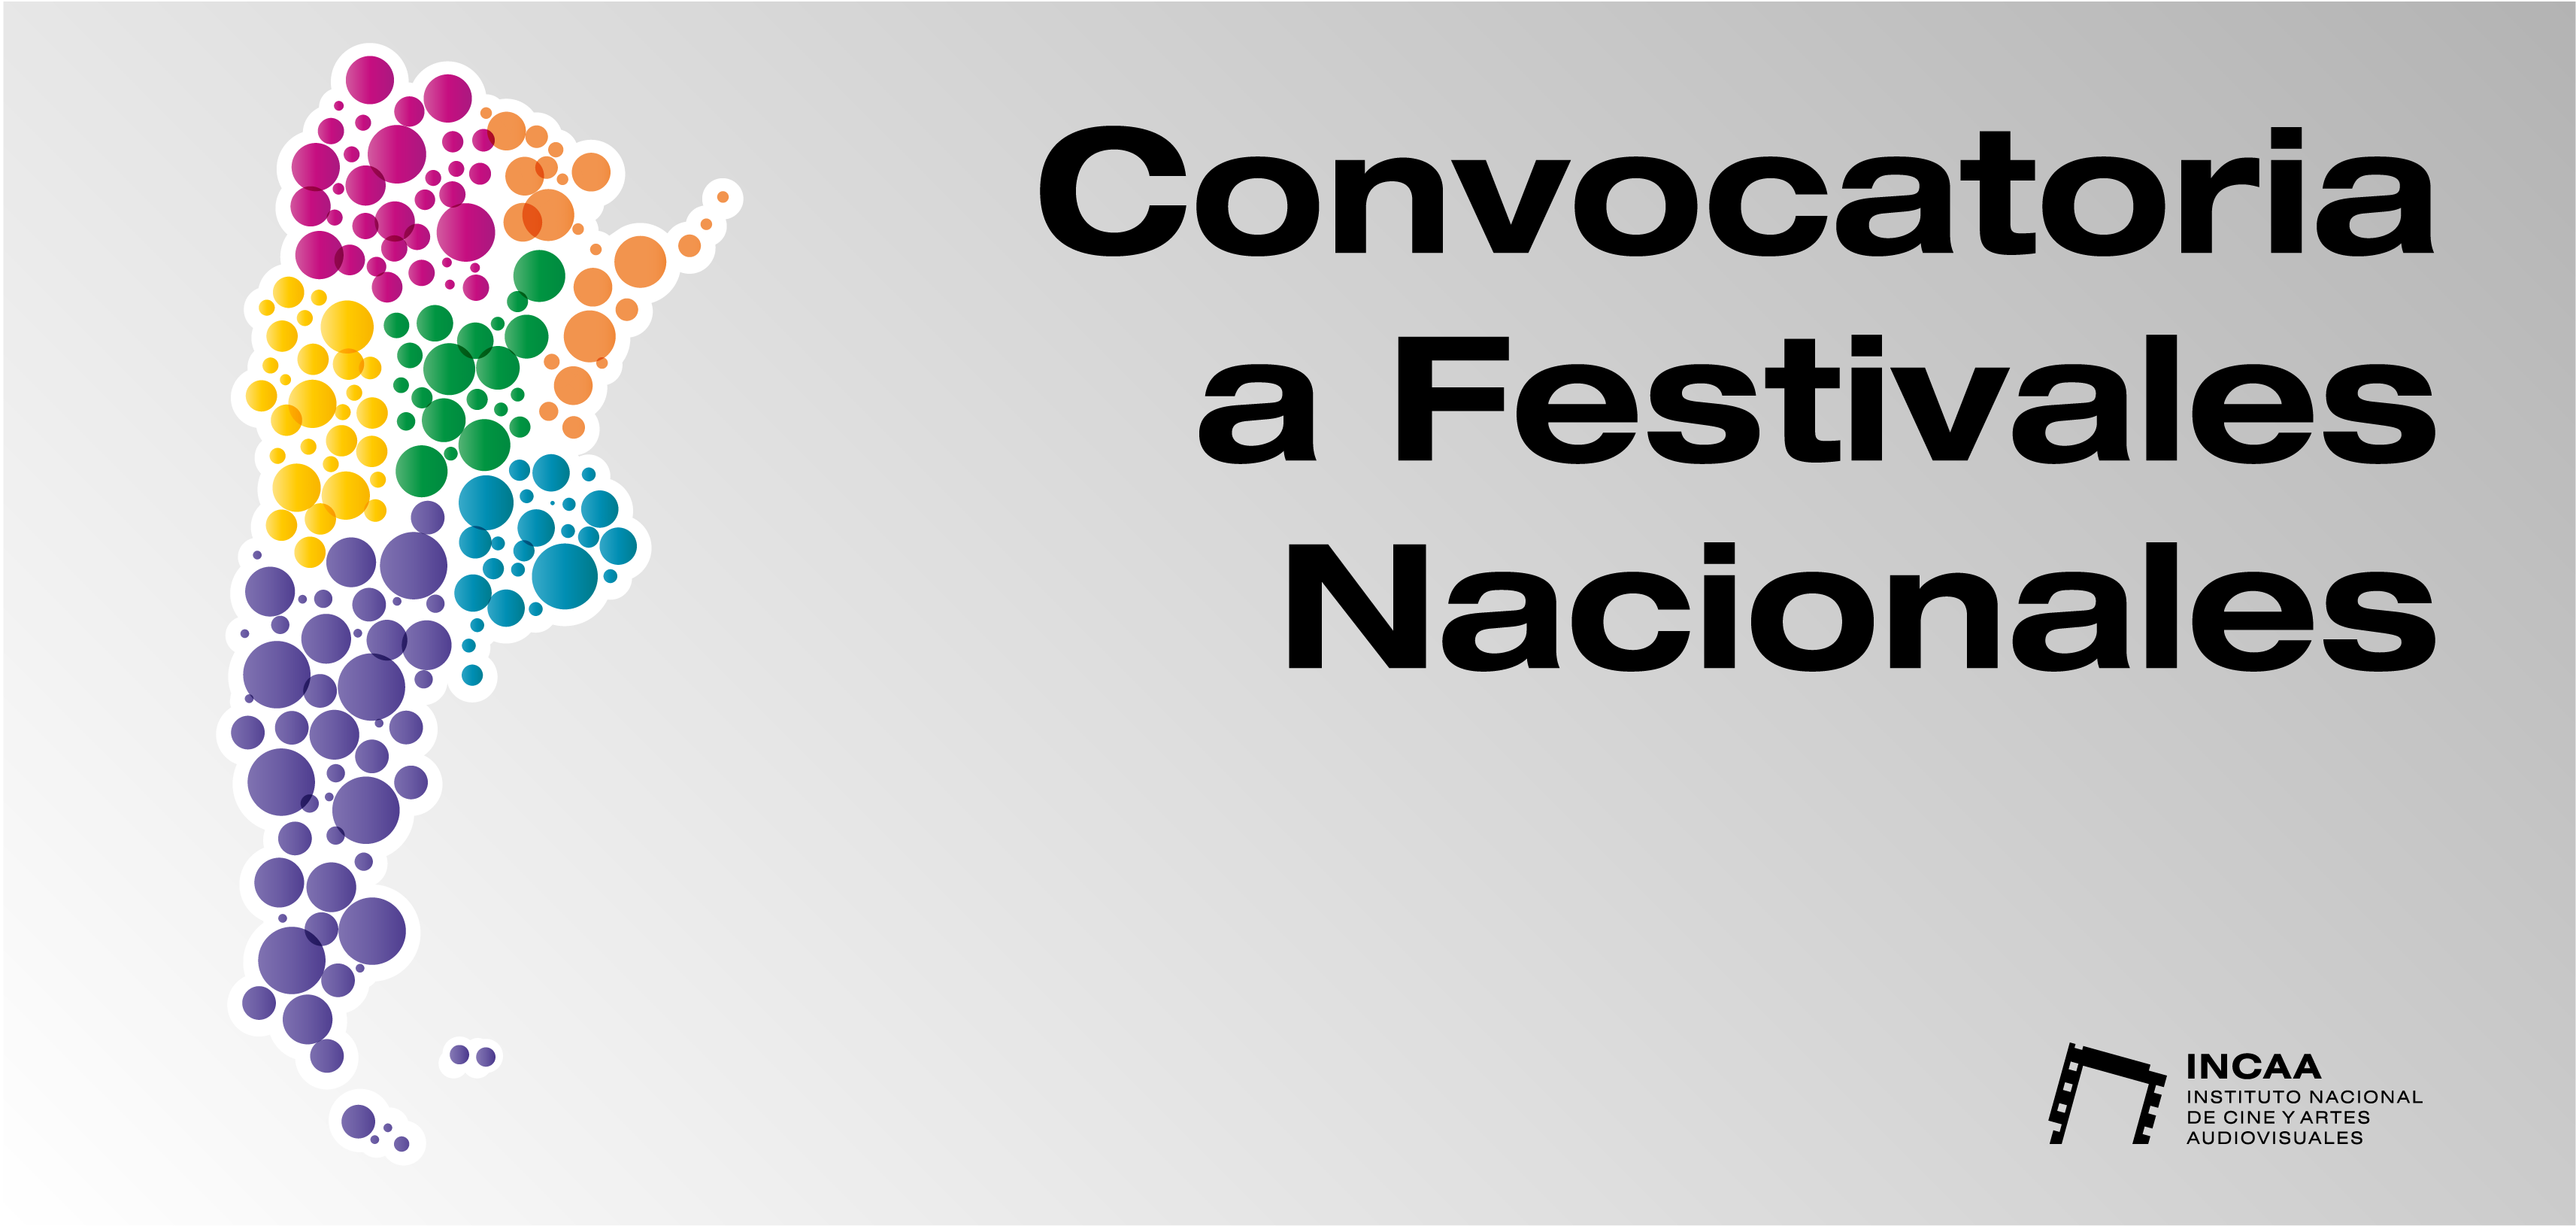 CONVOCATORIA DEL INCAA A FESTIVALES NACIONALES